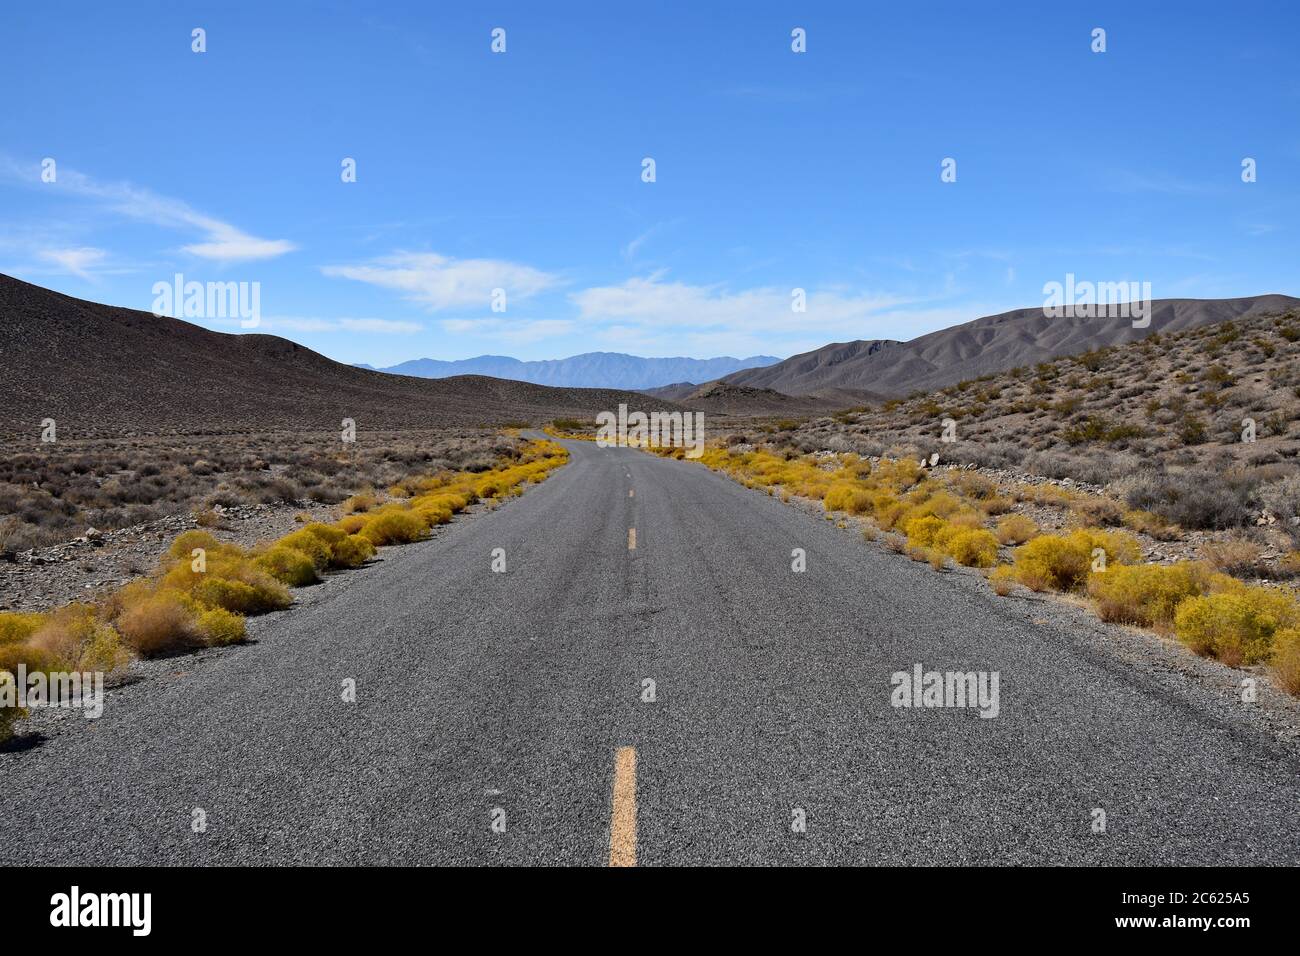 Gelbe Büsche säumen die Autobahn. Braune Wüstenberge, blauer Himmel und Sonnenschein. Landschaftlich reizvolle Fahrt, USA Road Trip entlang Emigrant Canyon Road, Death Valley. Stockfoto